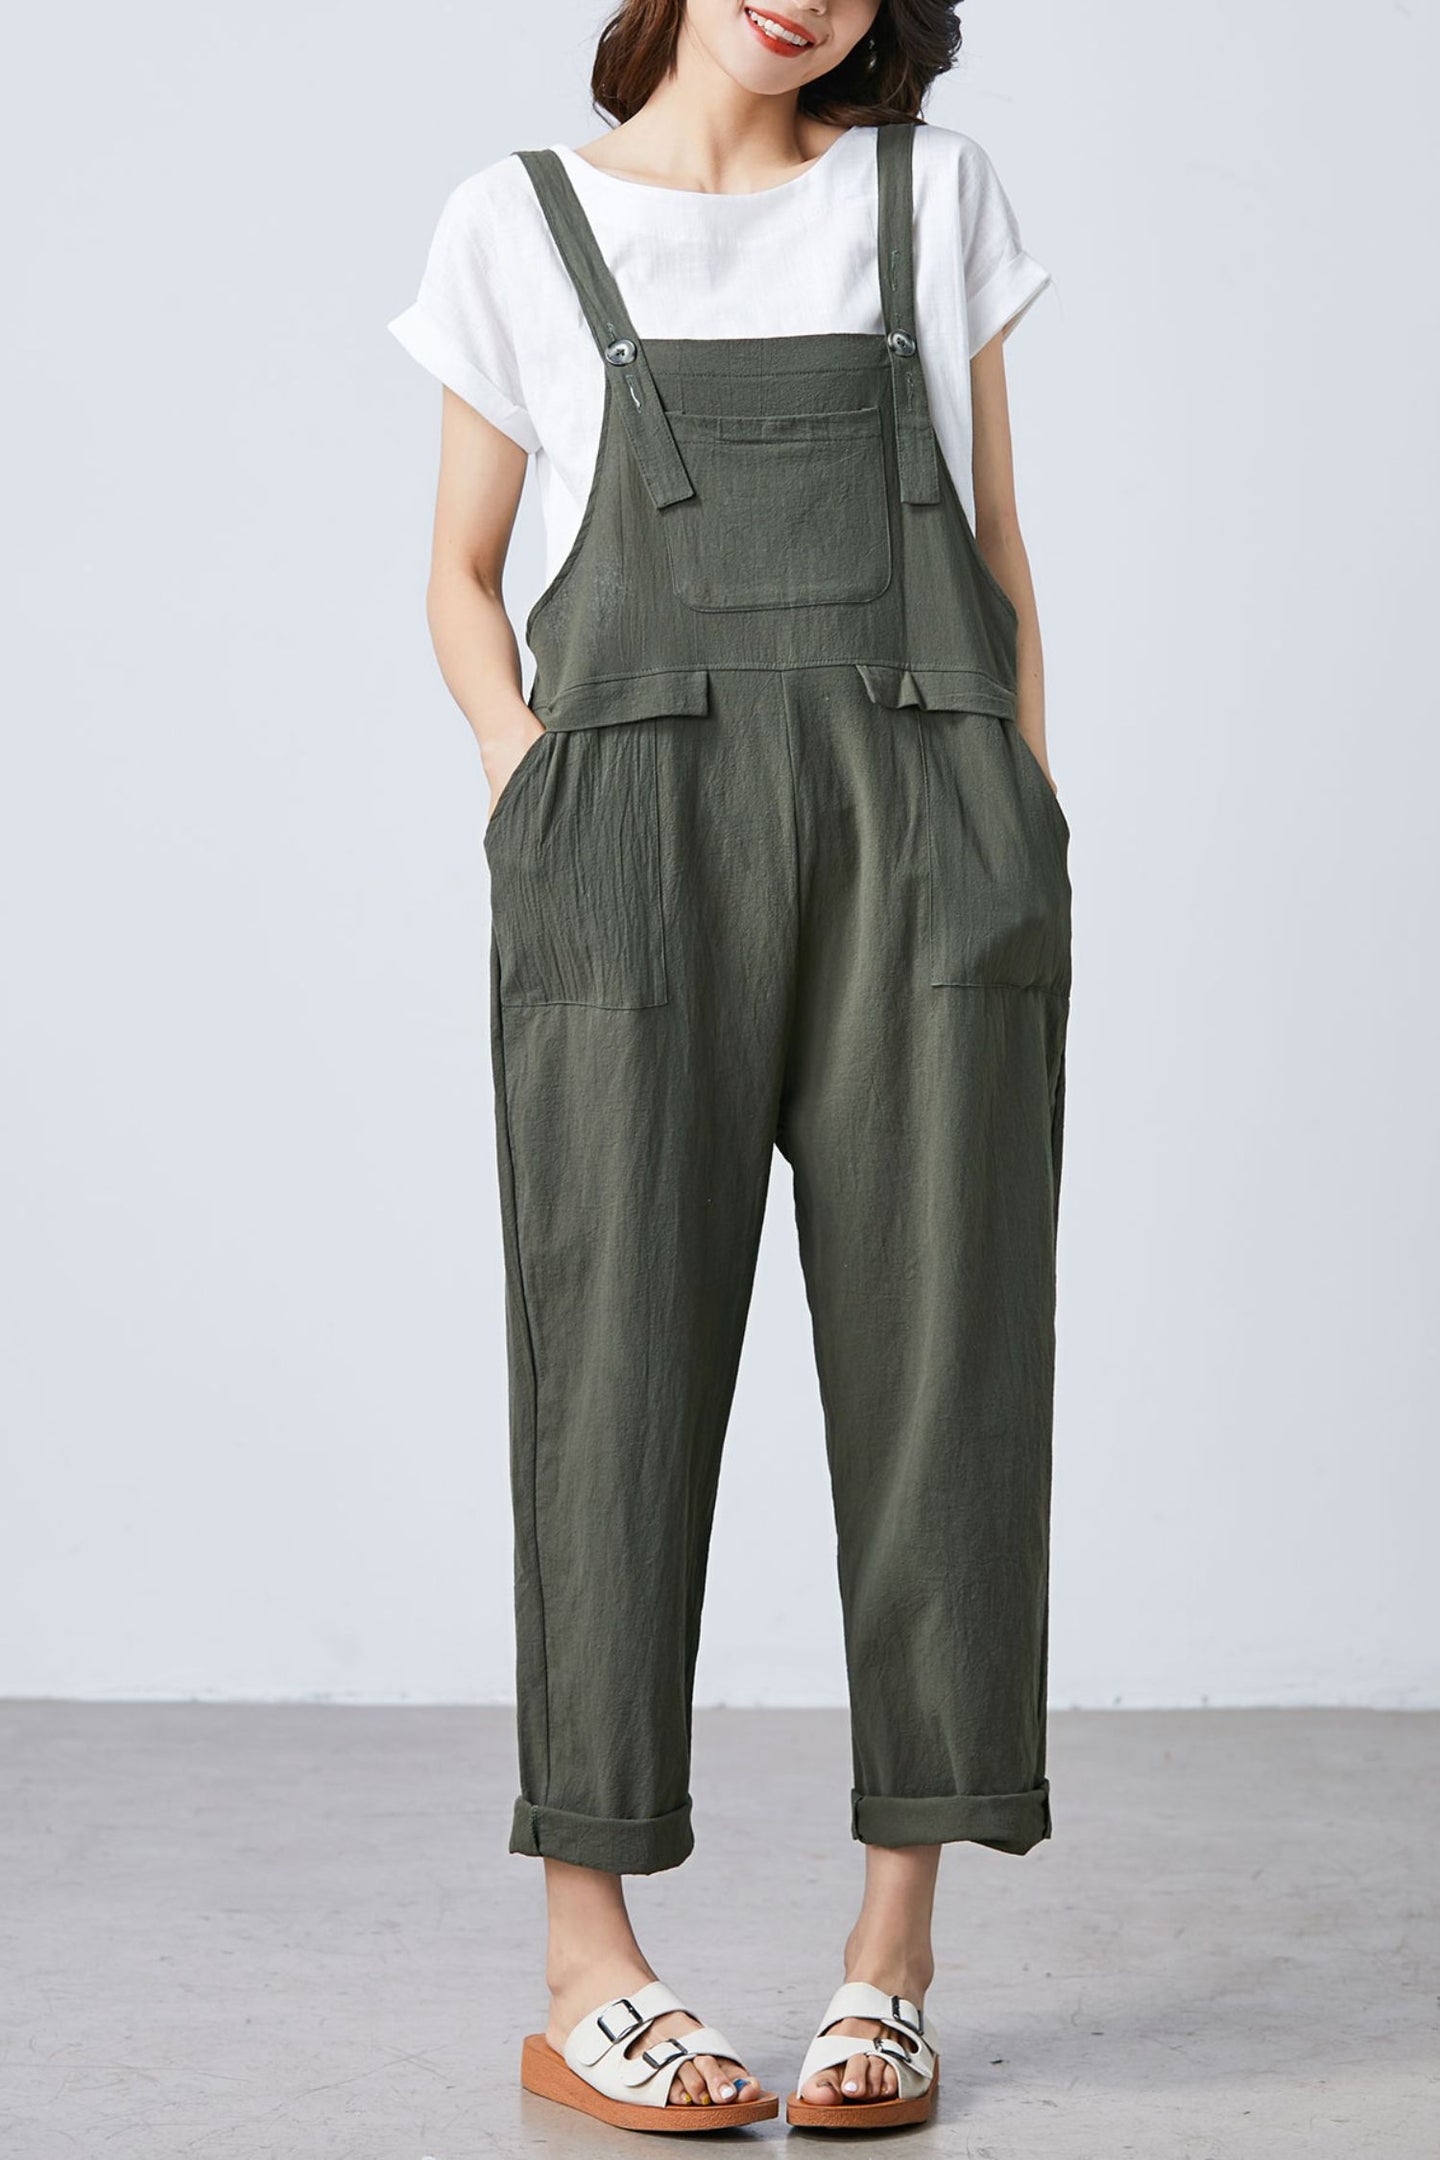 Summer green linen jumpsuit women C1697